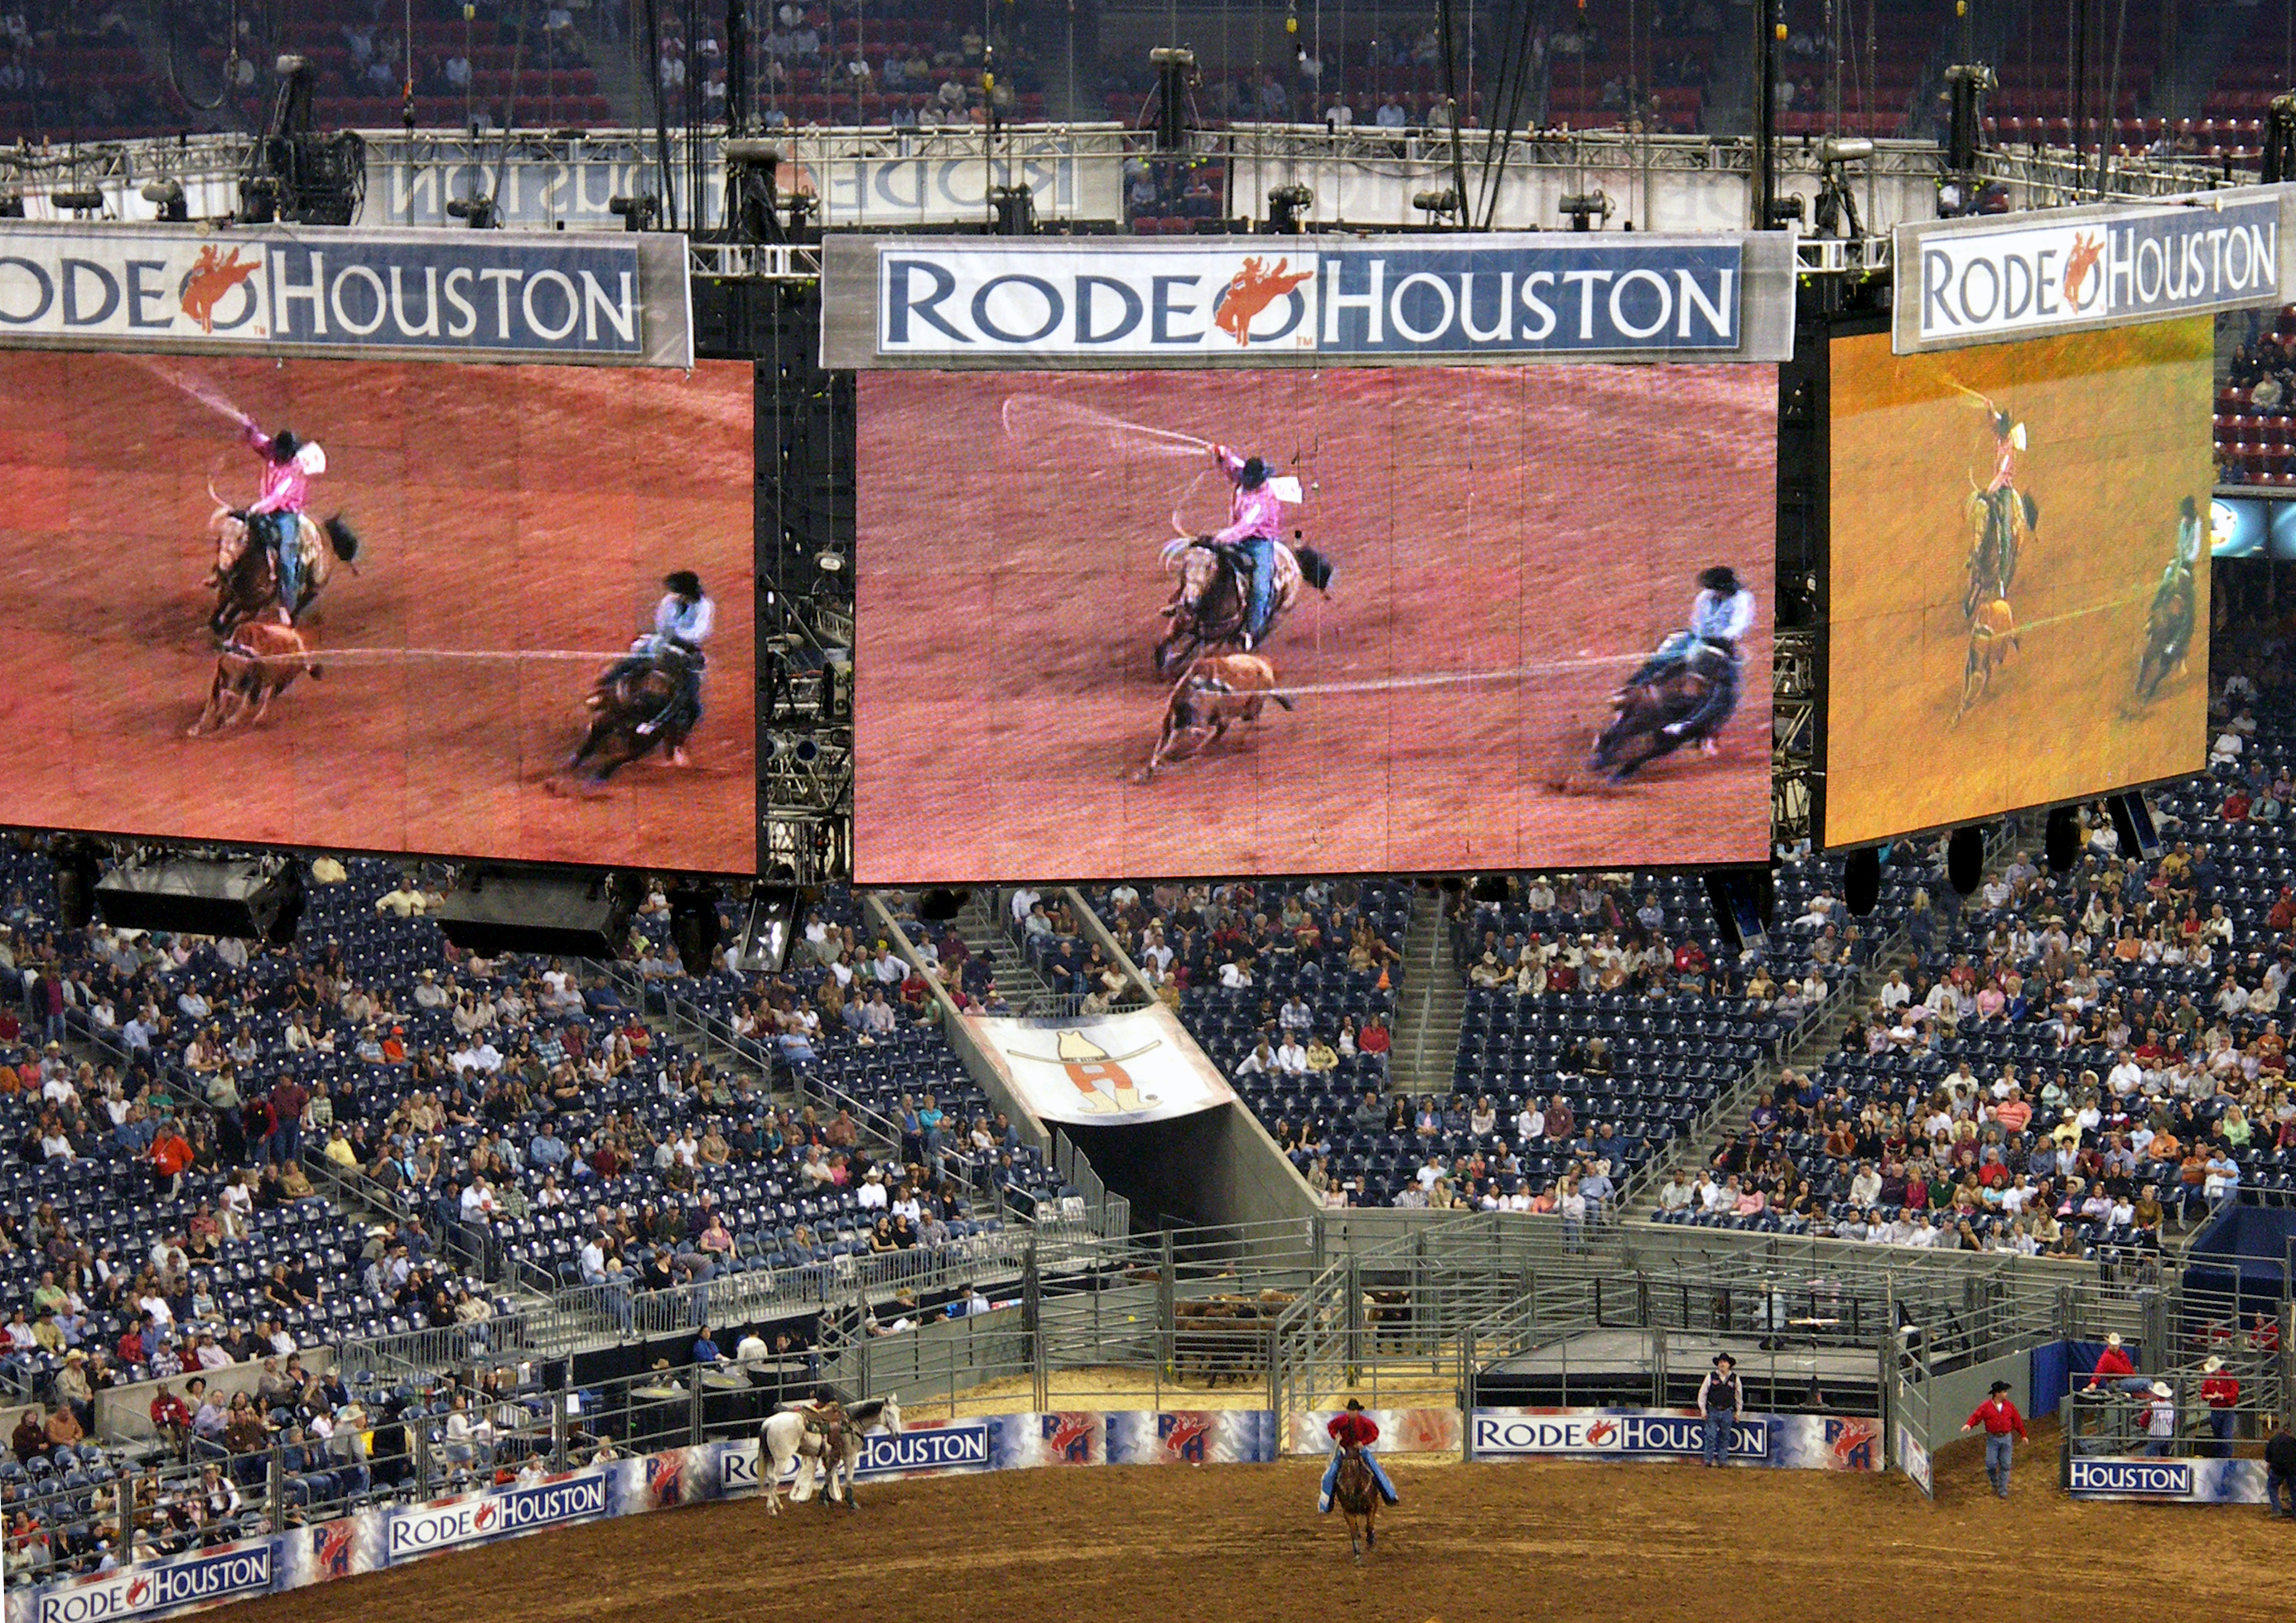 Rodeo Houston, Texas